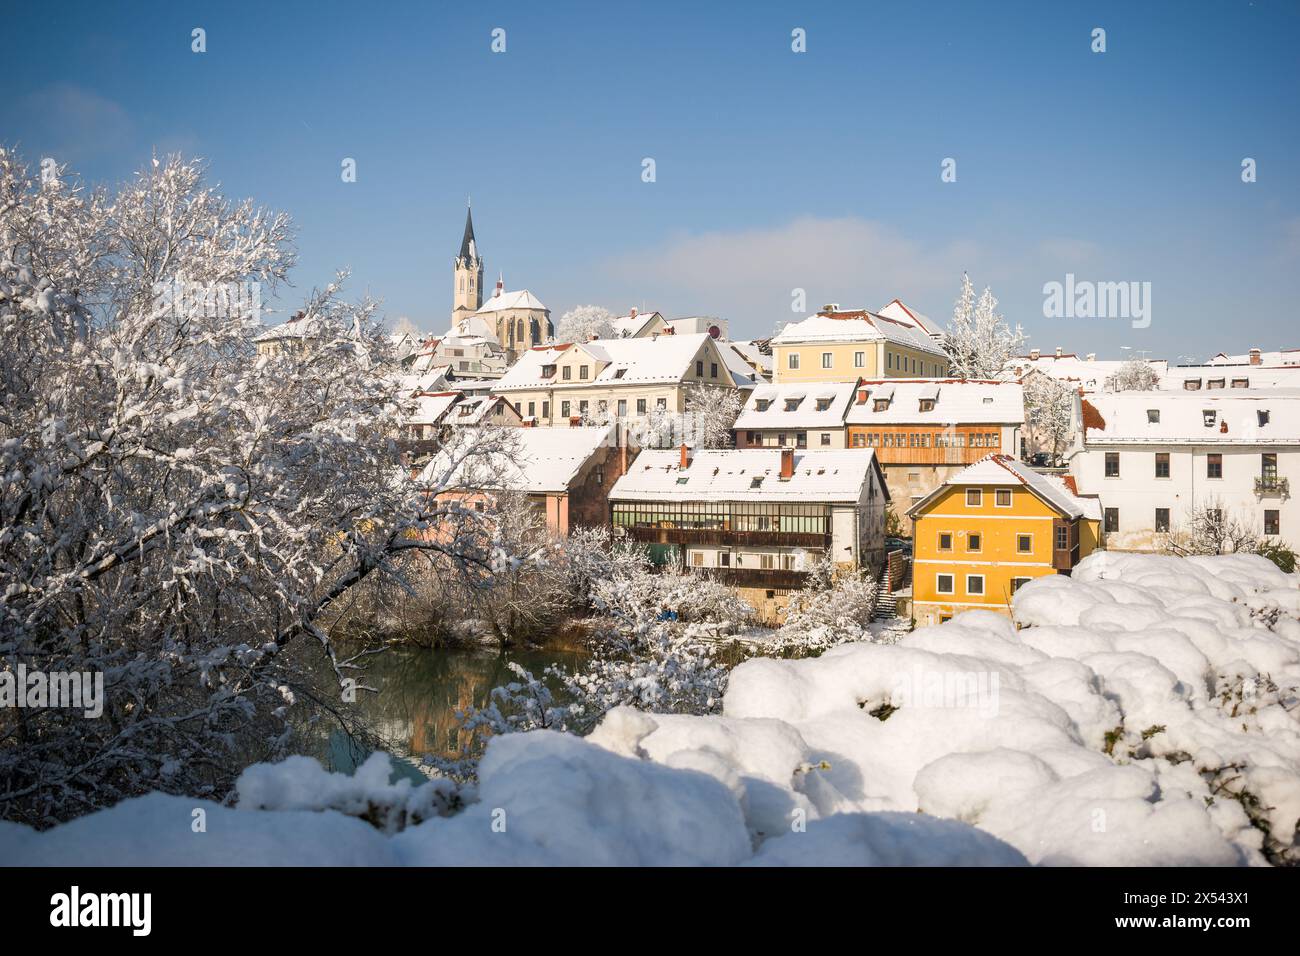 Novo mesto, Dolenjska region, Slovenia. Town covered with snow at sunny day Stock Photo